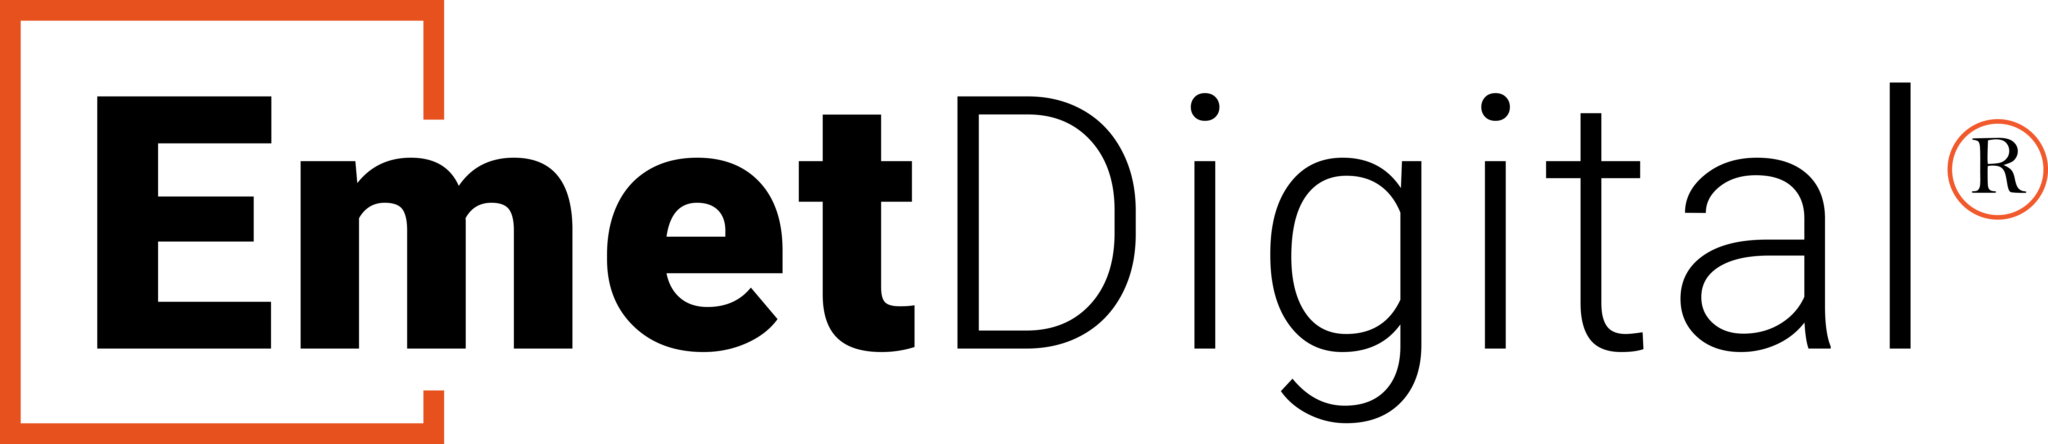 Emet Digital logo